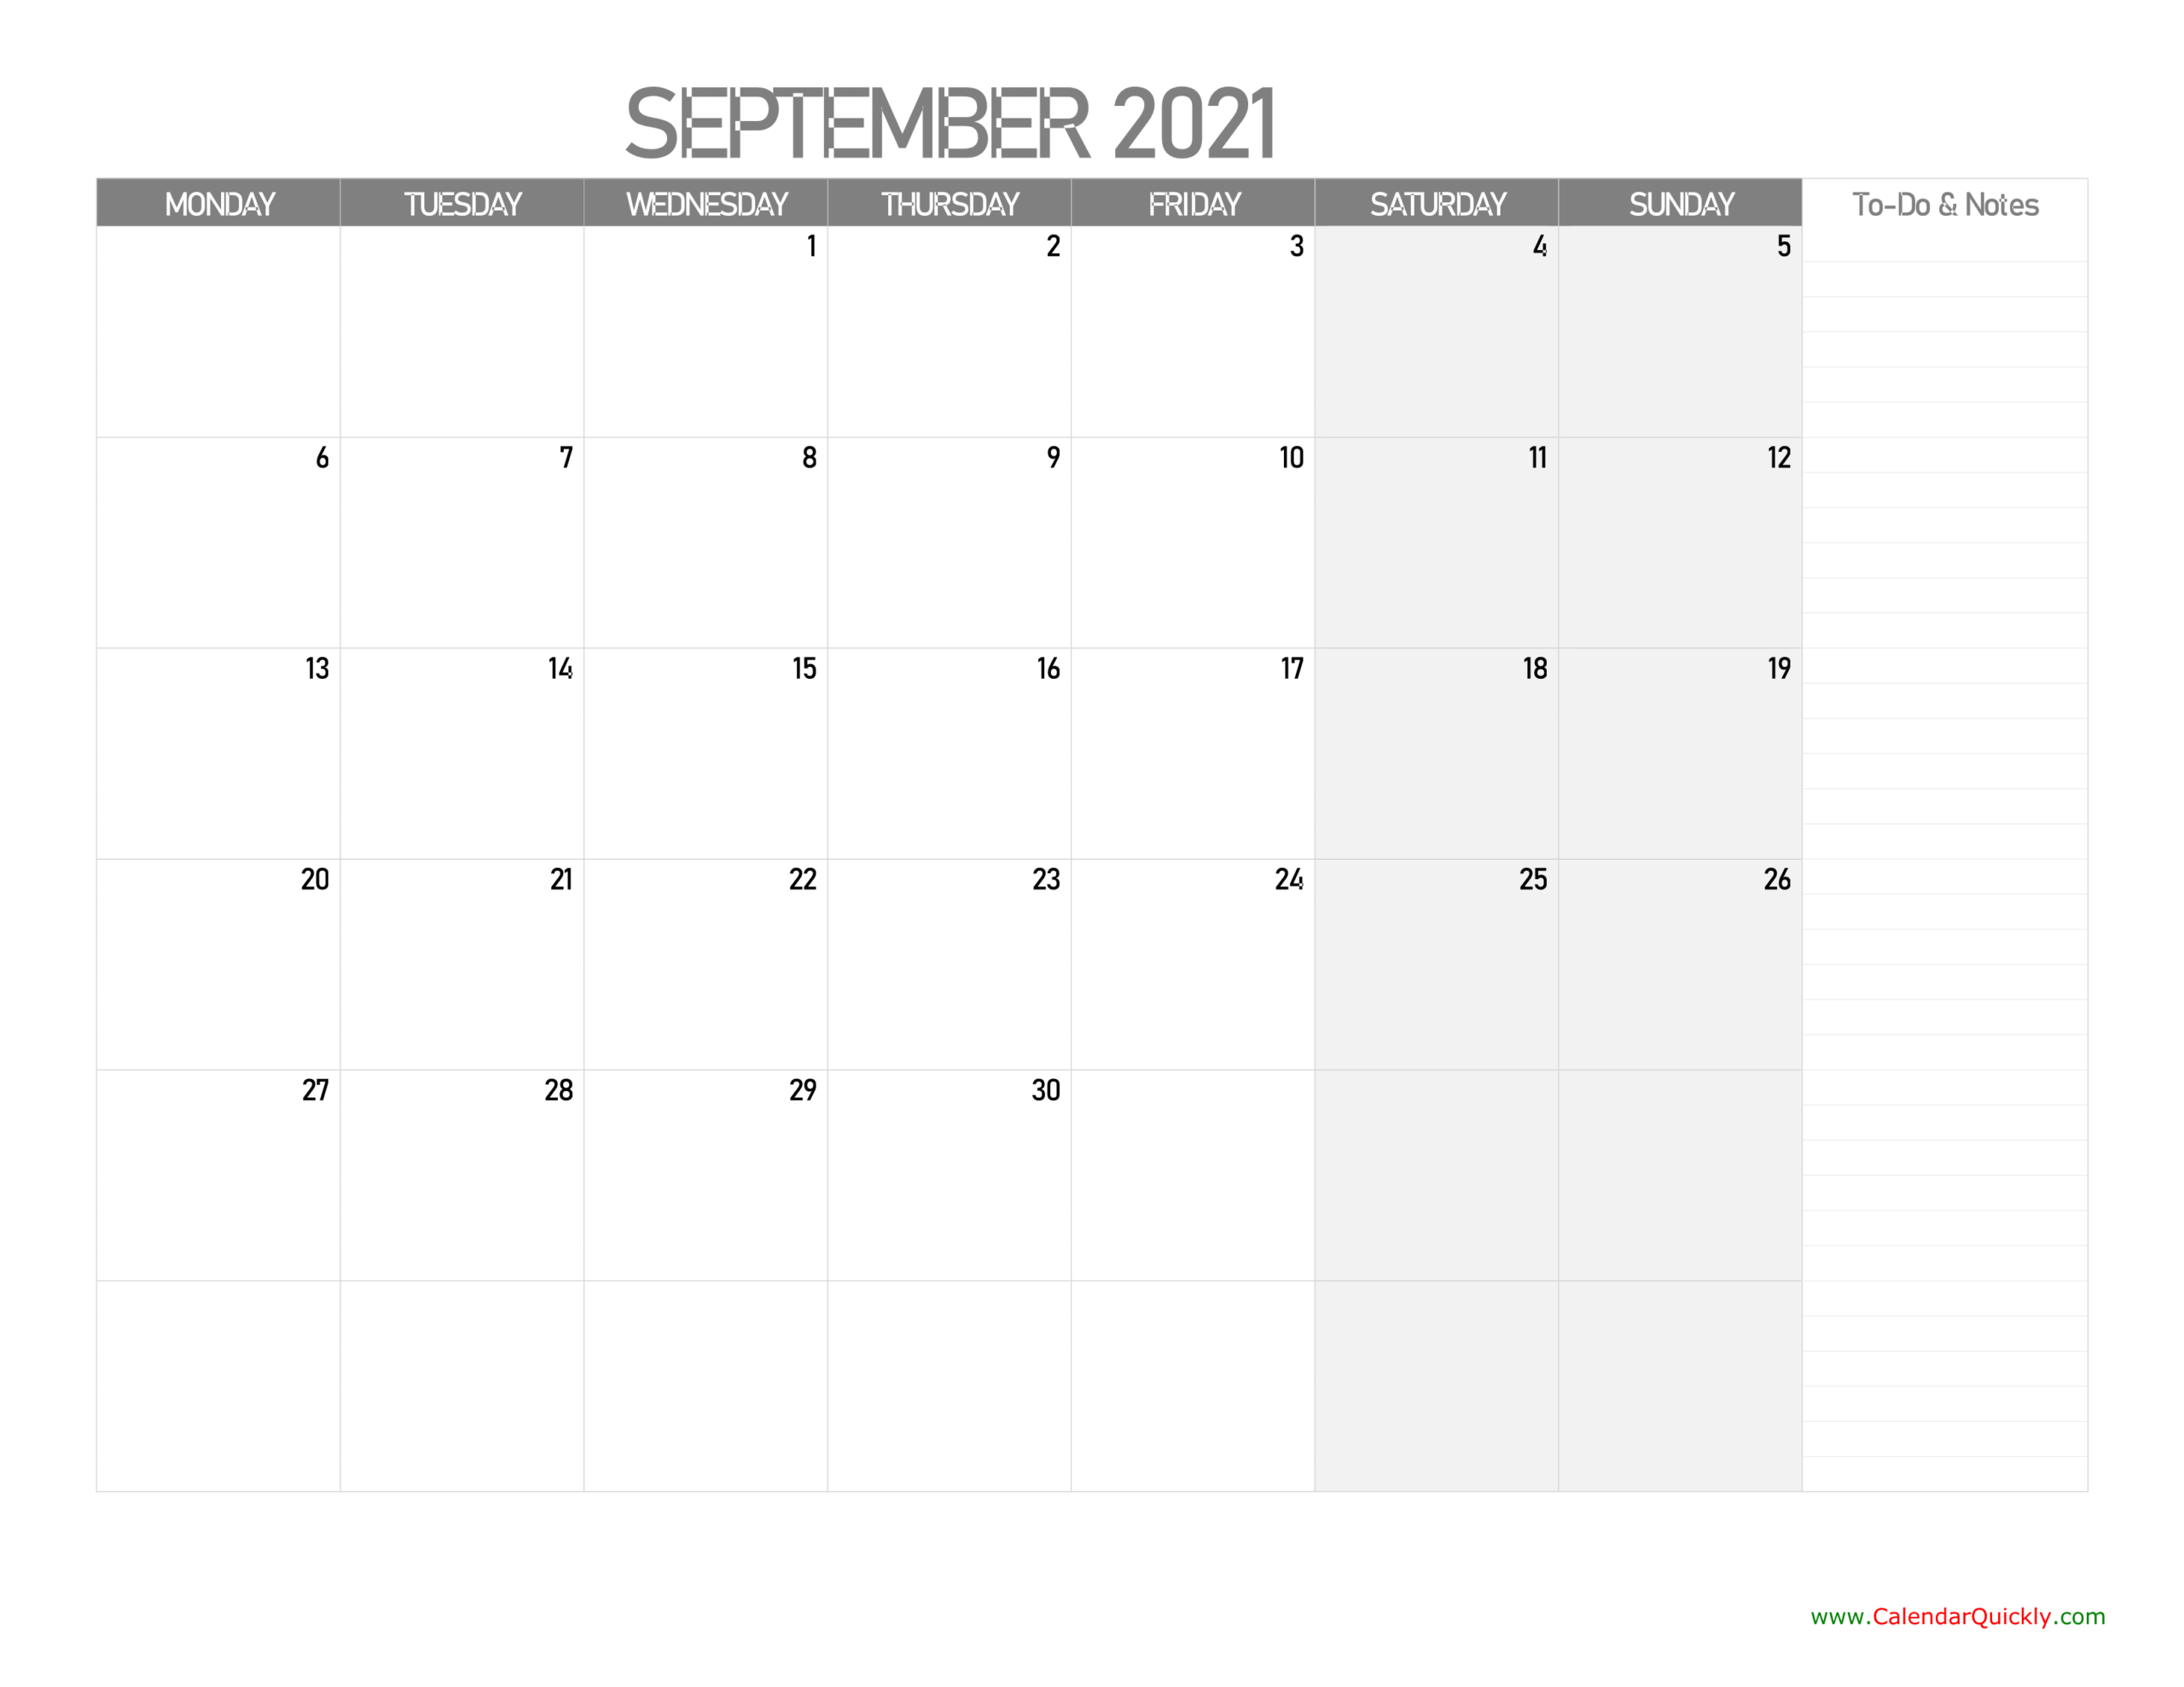 september monday calendar 2021 with notes | calendar quickly